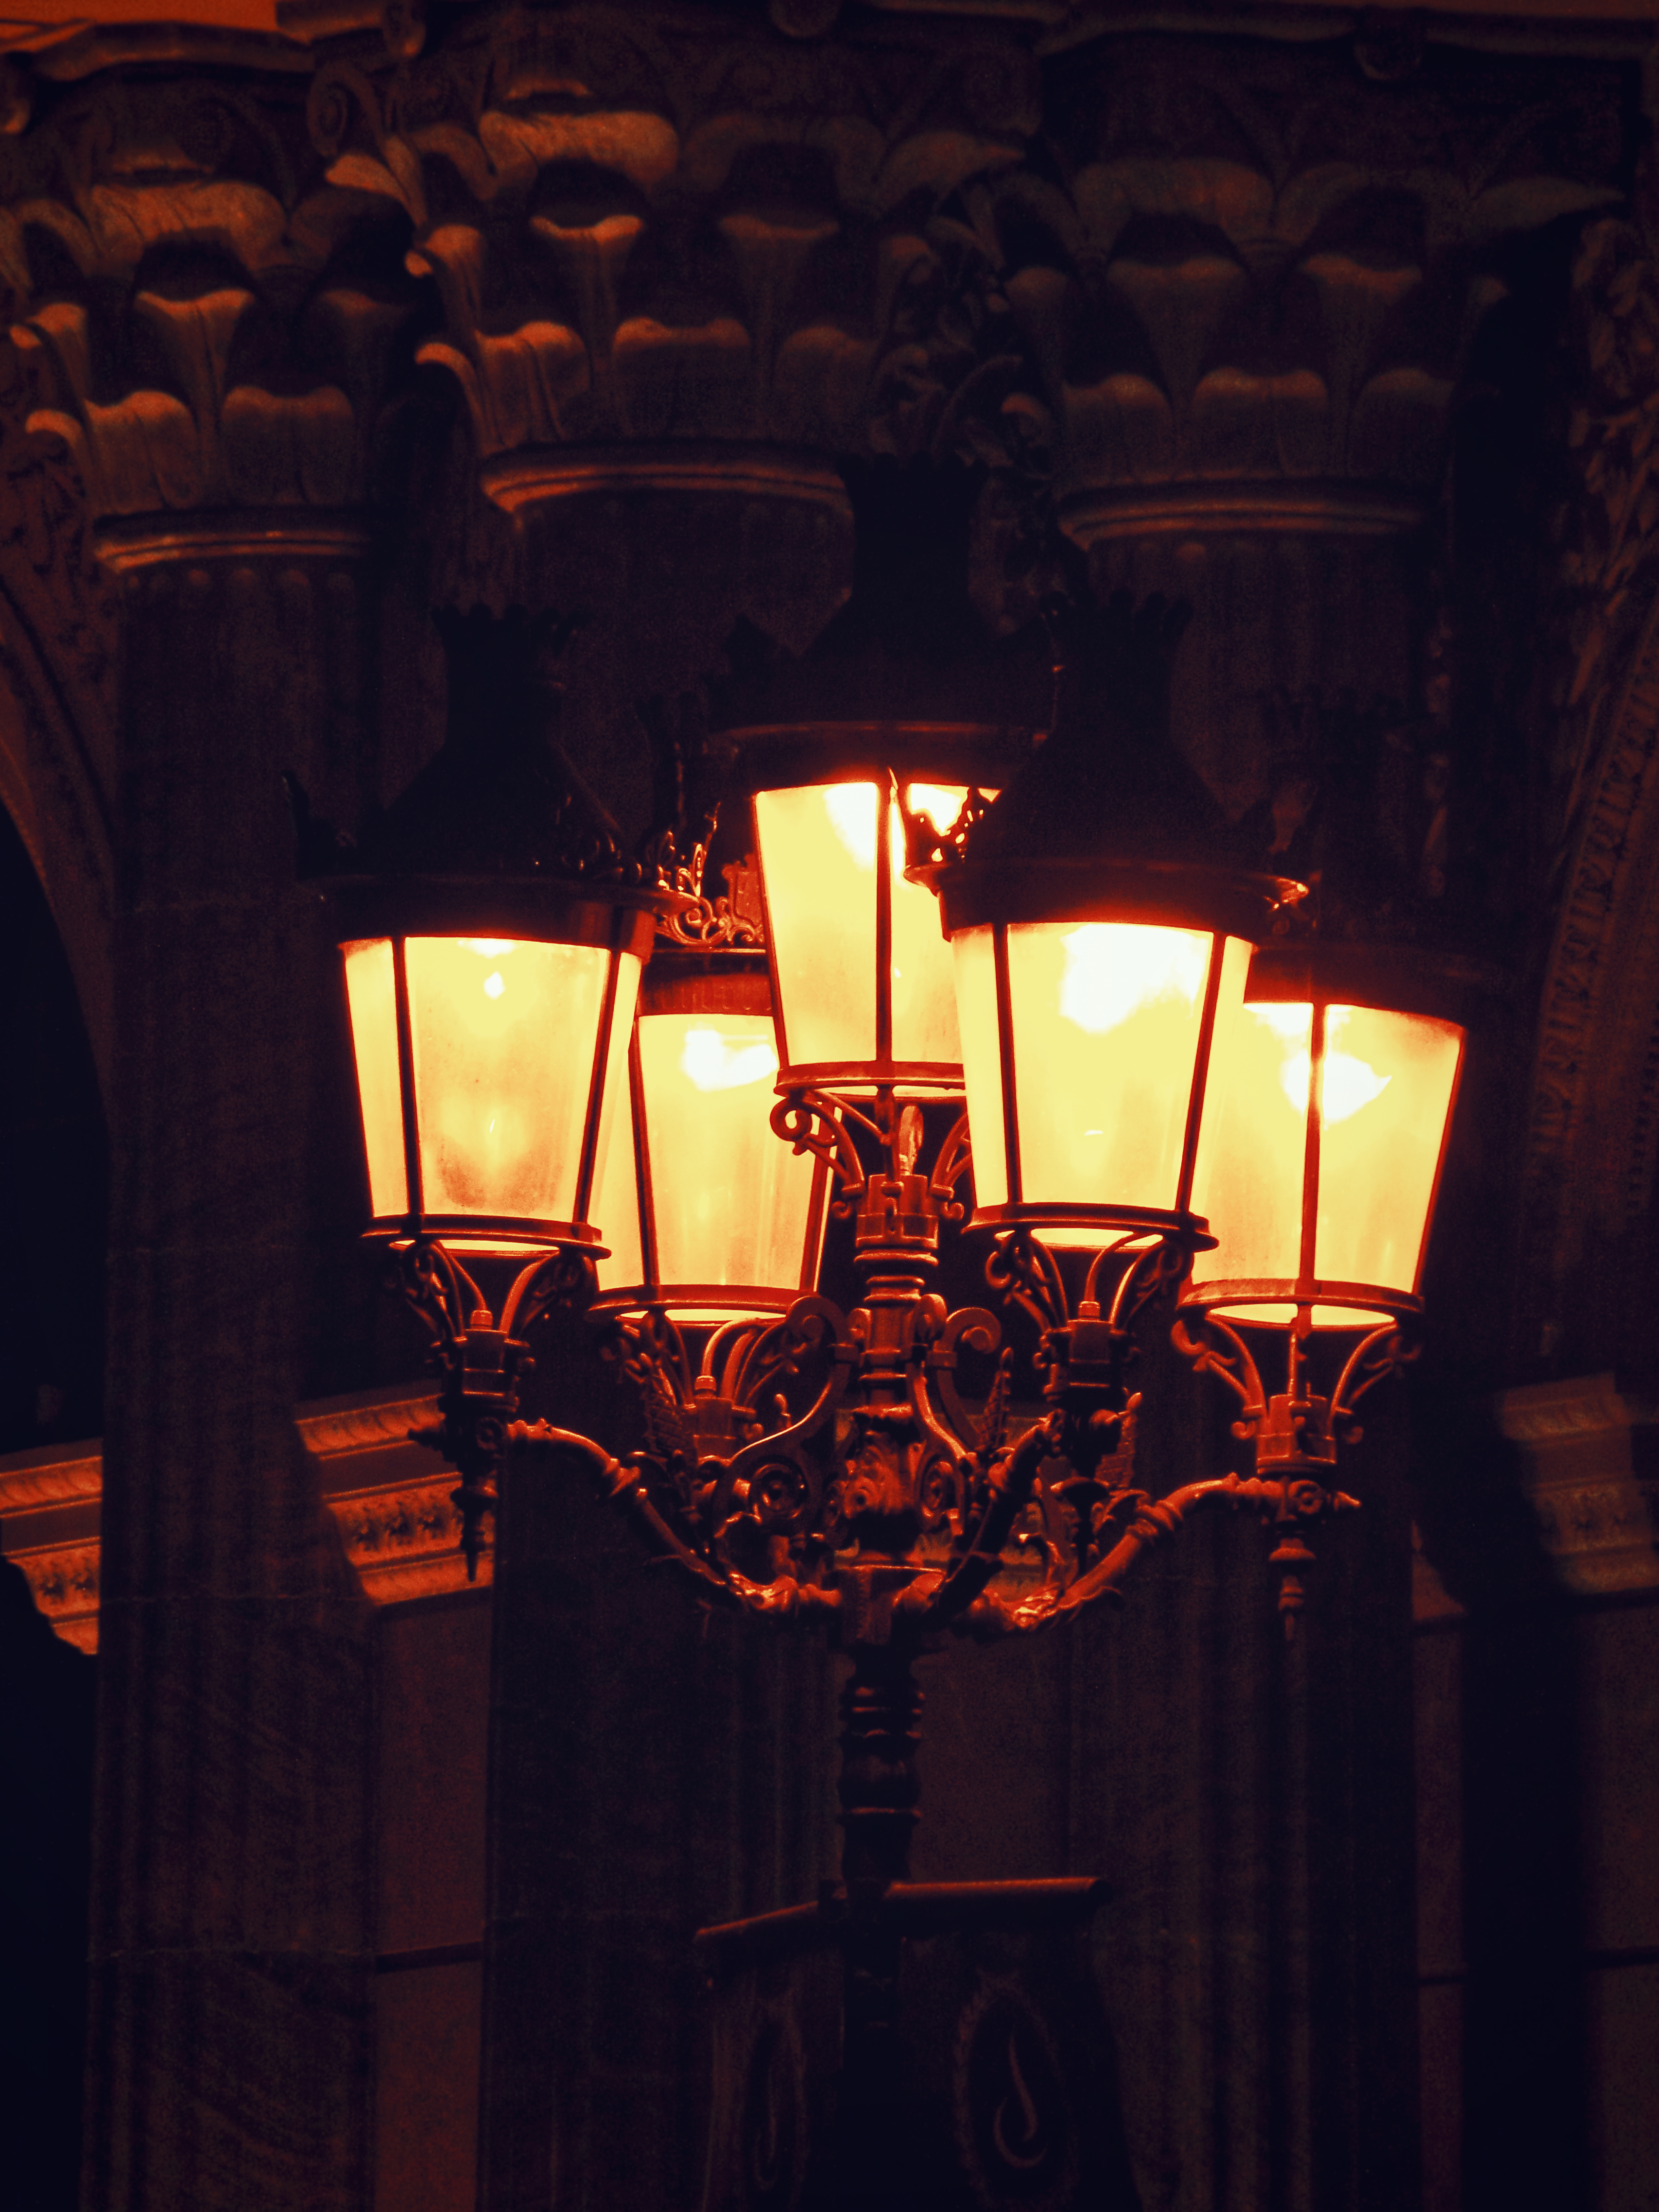 Fancy street lamps